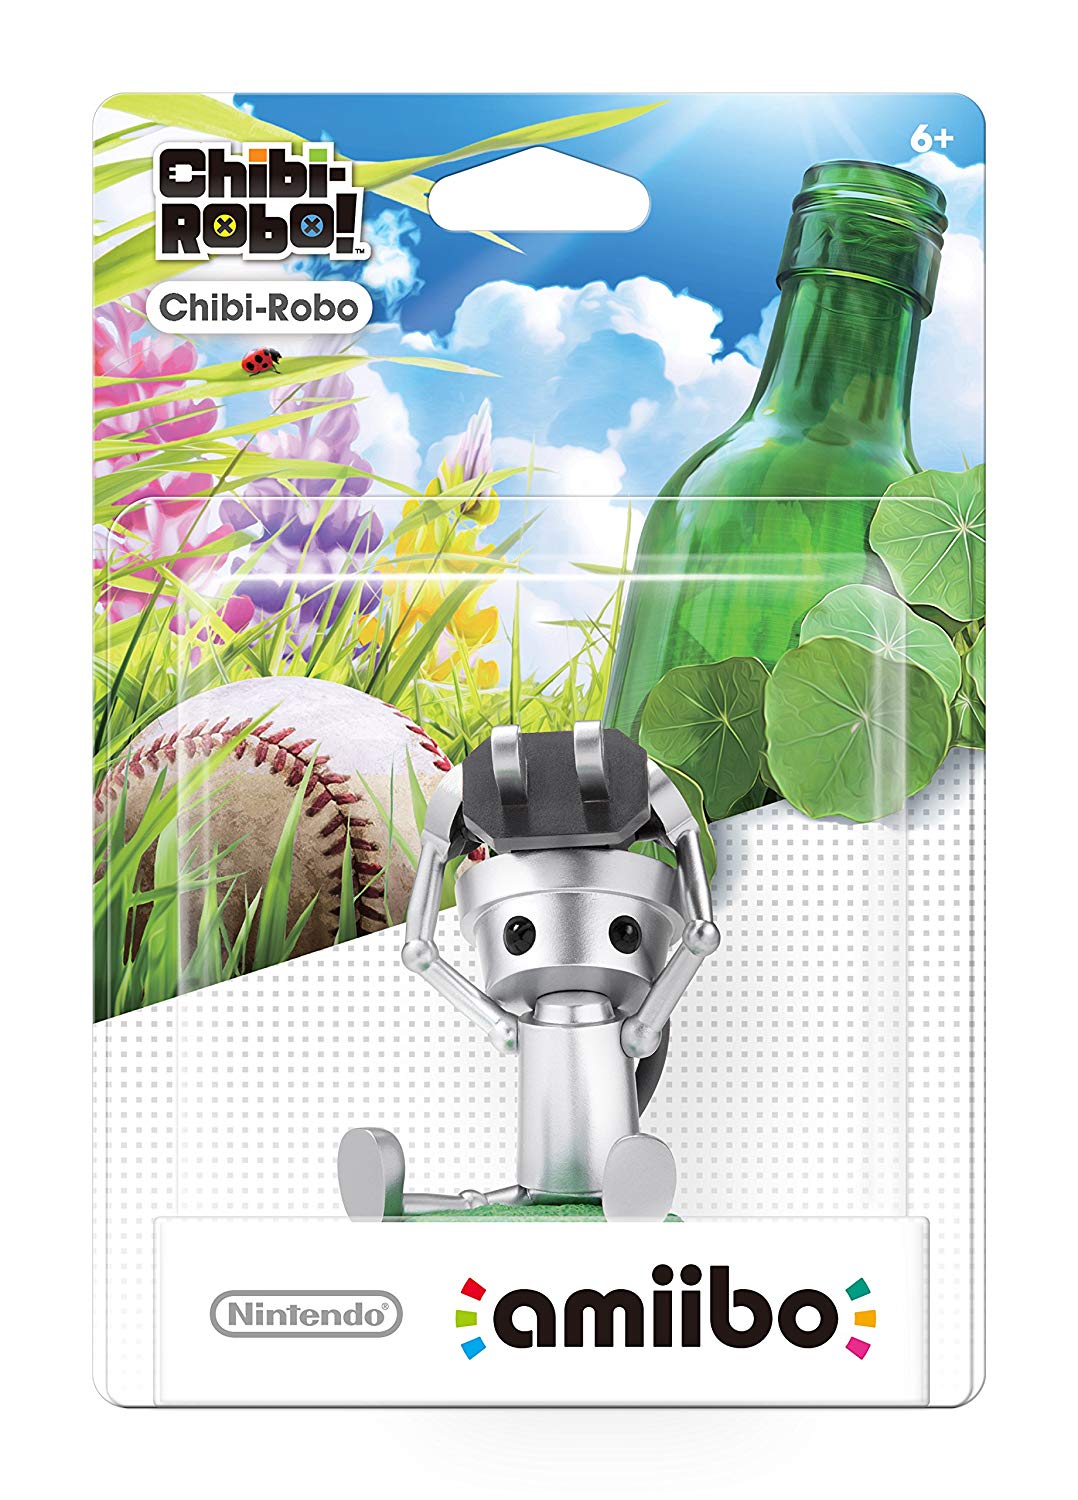 Chibi-Robo (Chibi-Robo series) - Nintendo 3DS Amiibo Amiibo Nintendo   